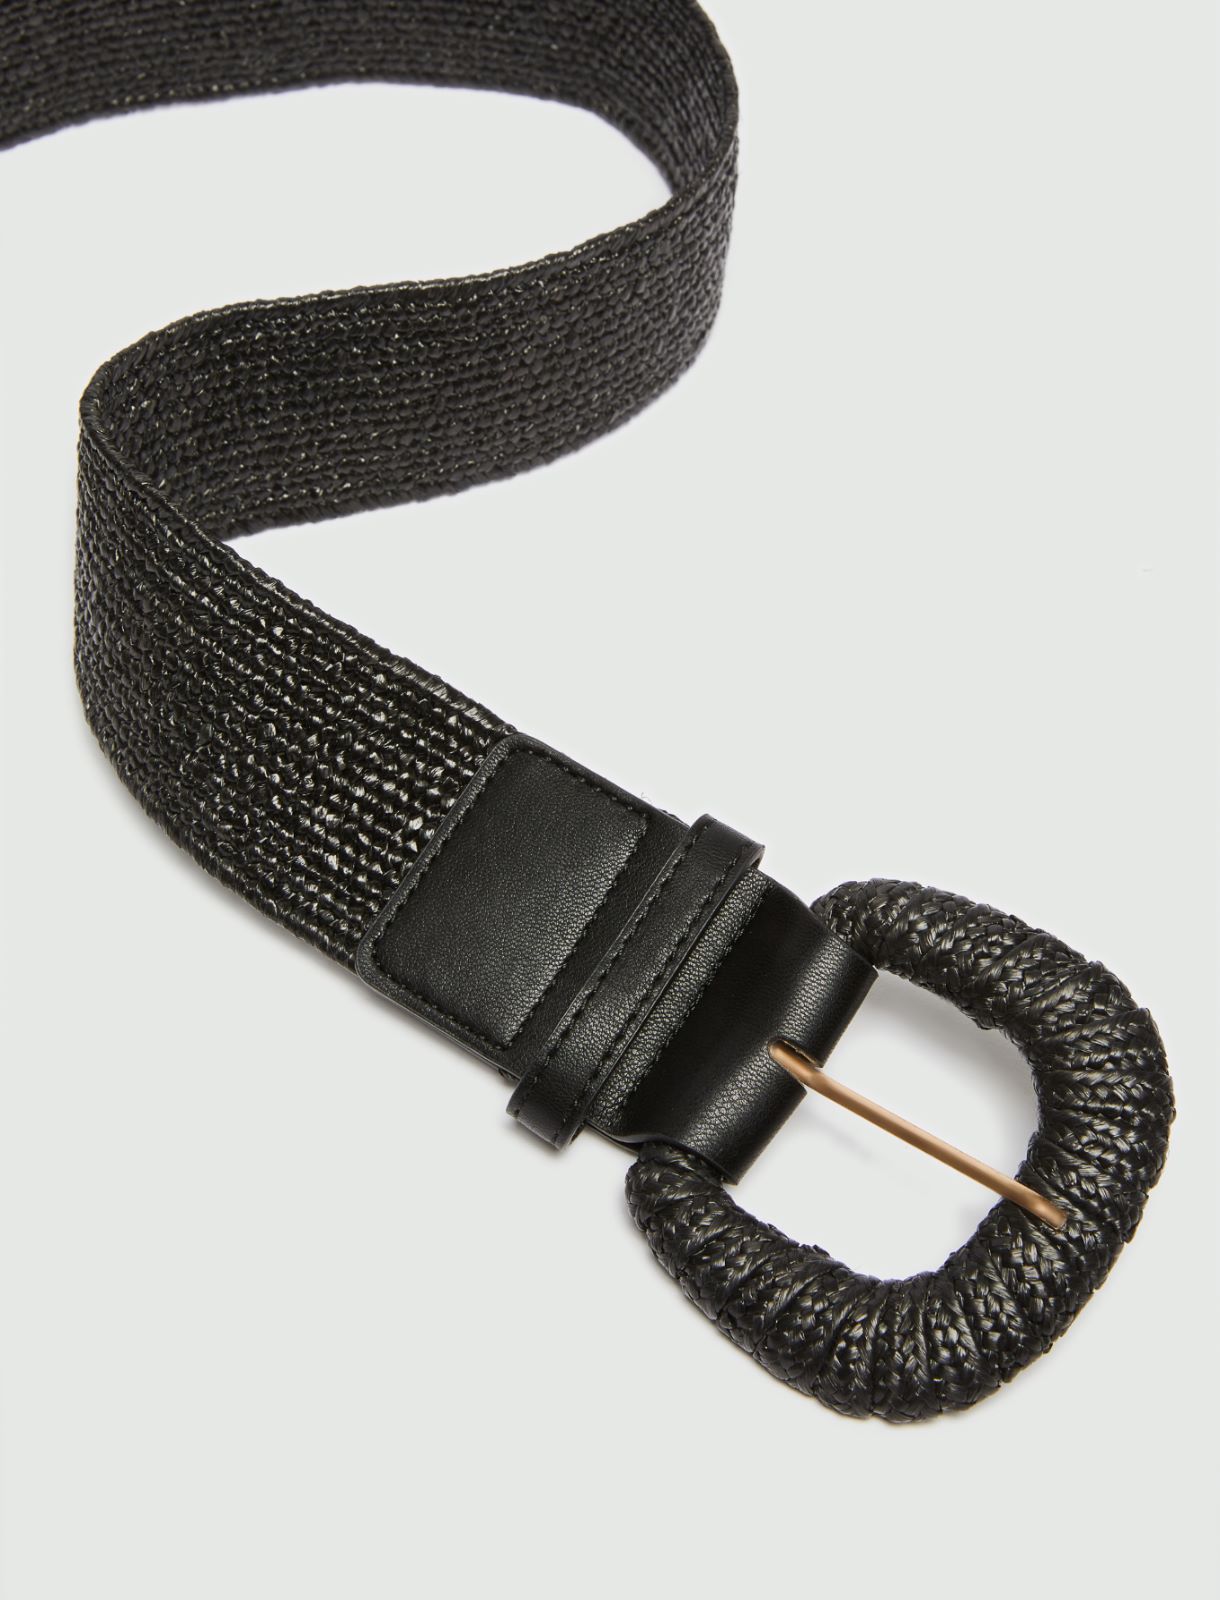 Raffia belt, black | Marella